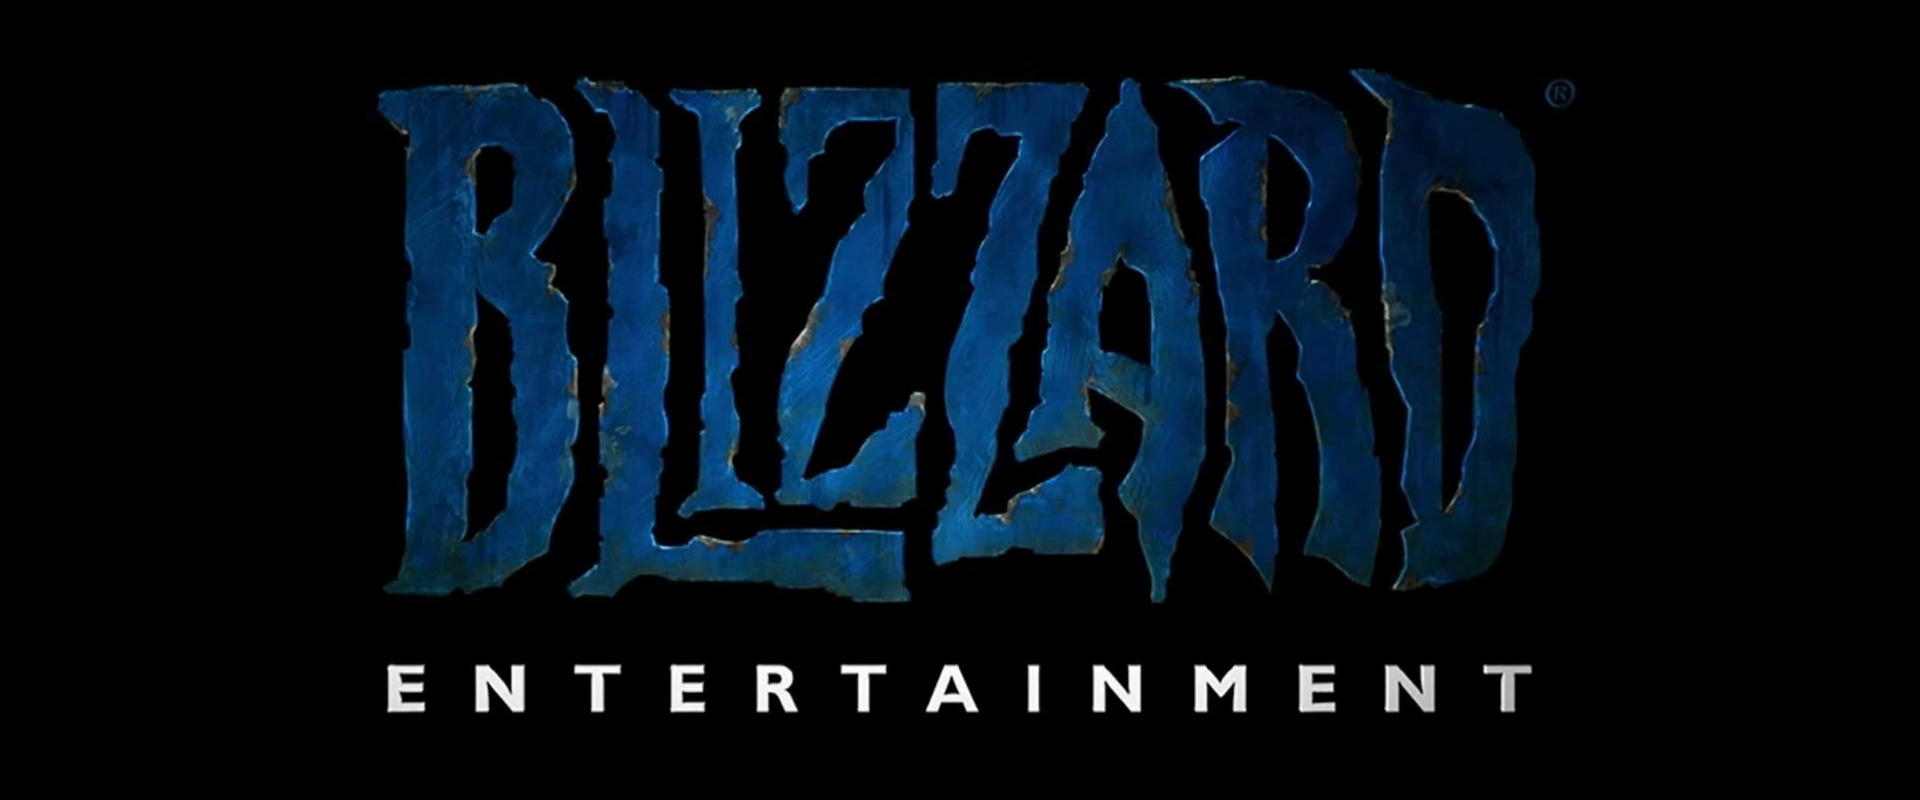 Az év esport álláshirdetését tette közzé a Blizzard!